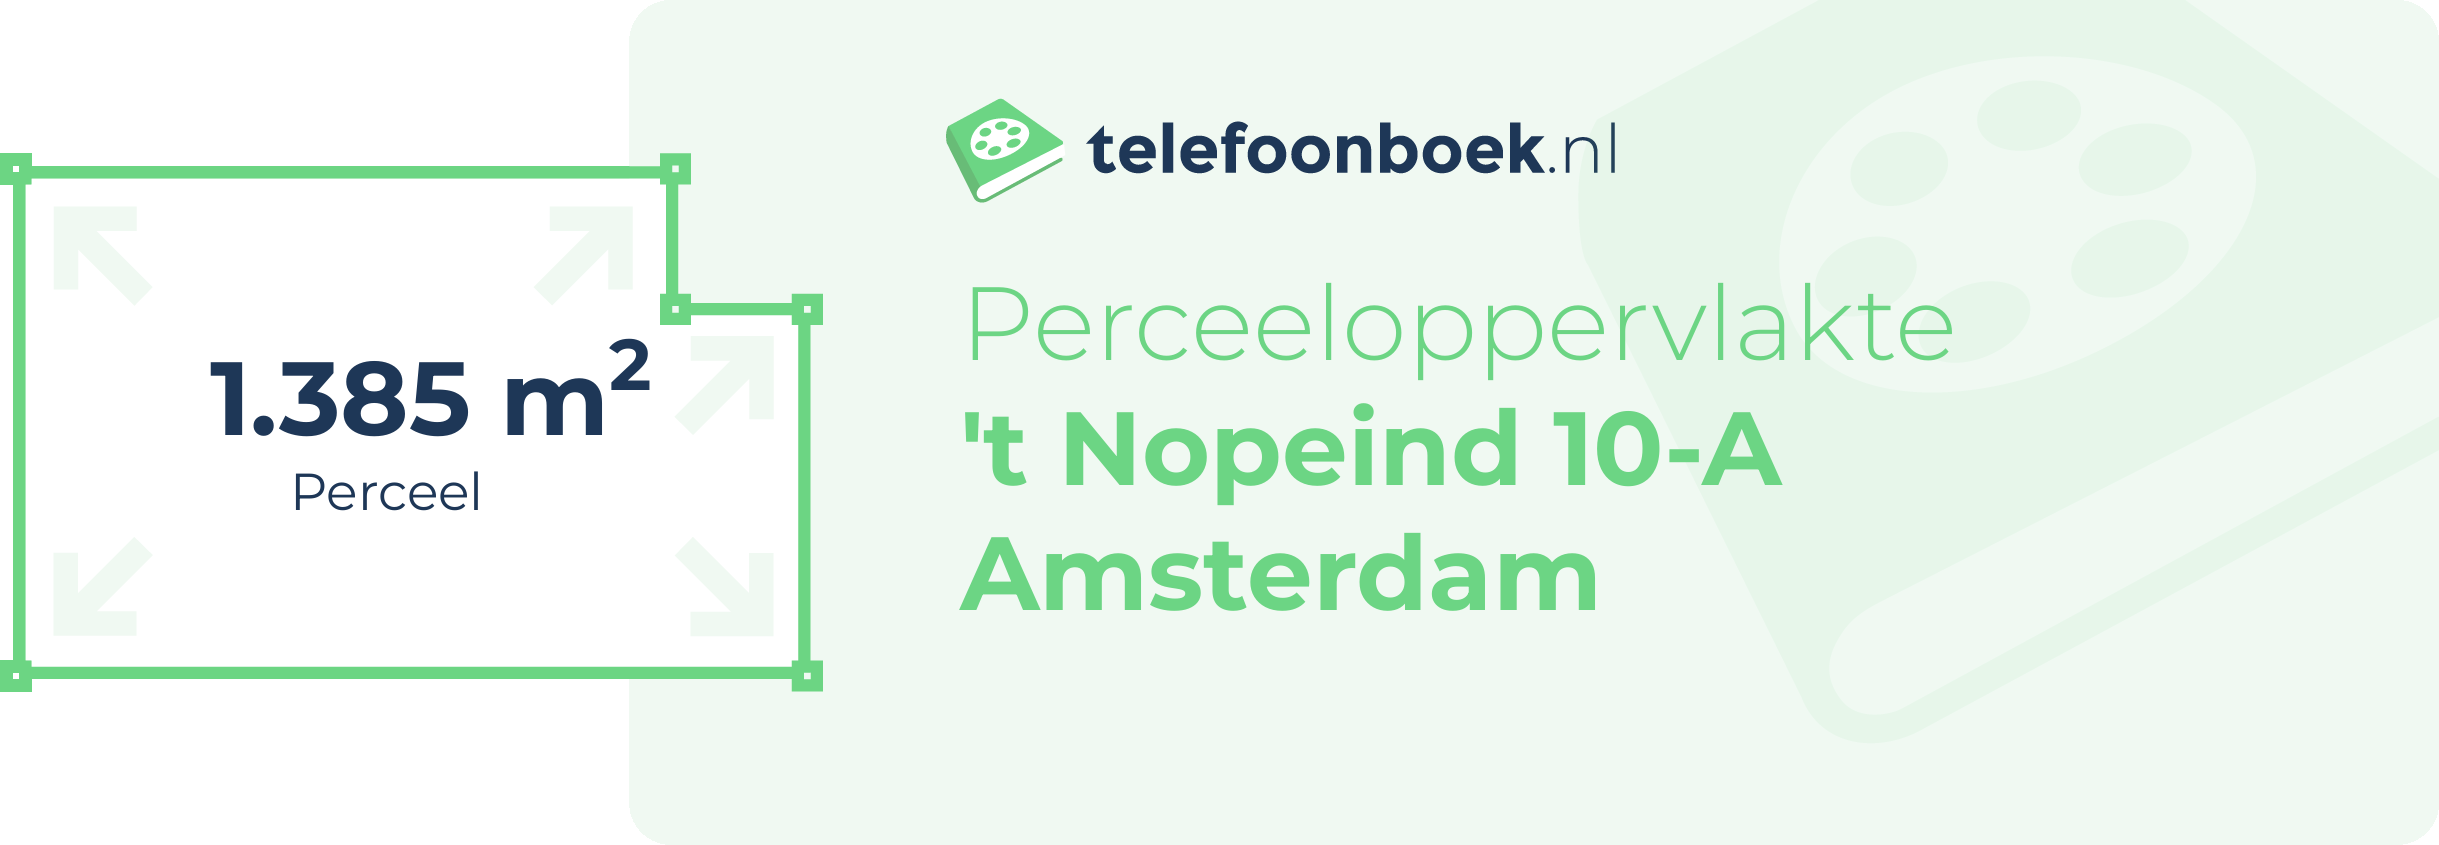 Perceeloppervlakte 't Nopeind 10-A Amsterdam